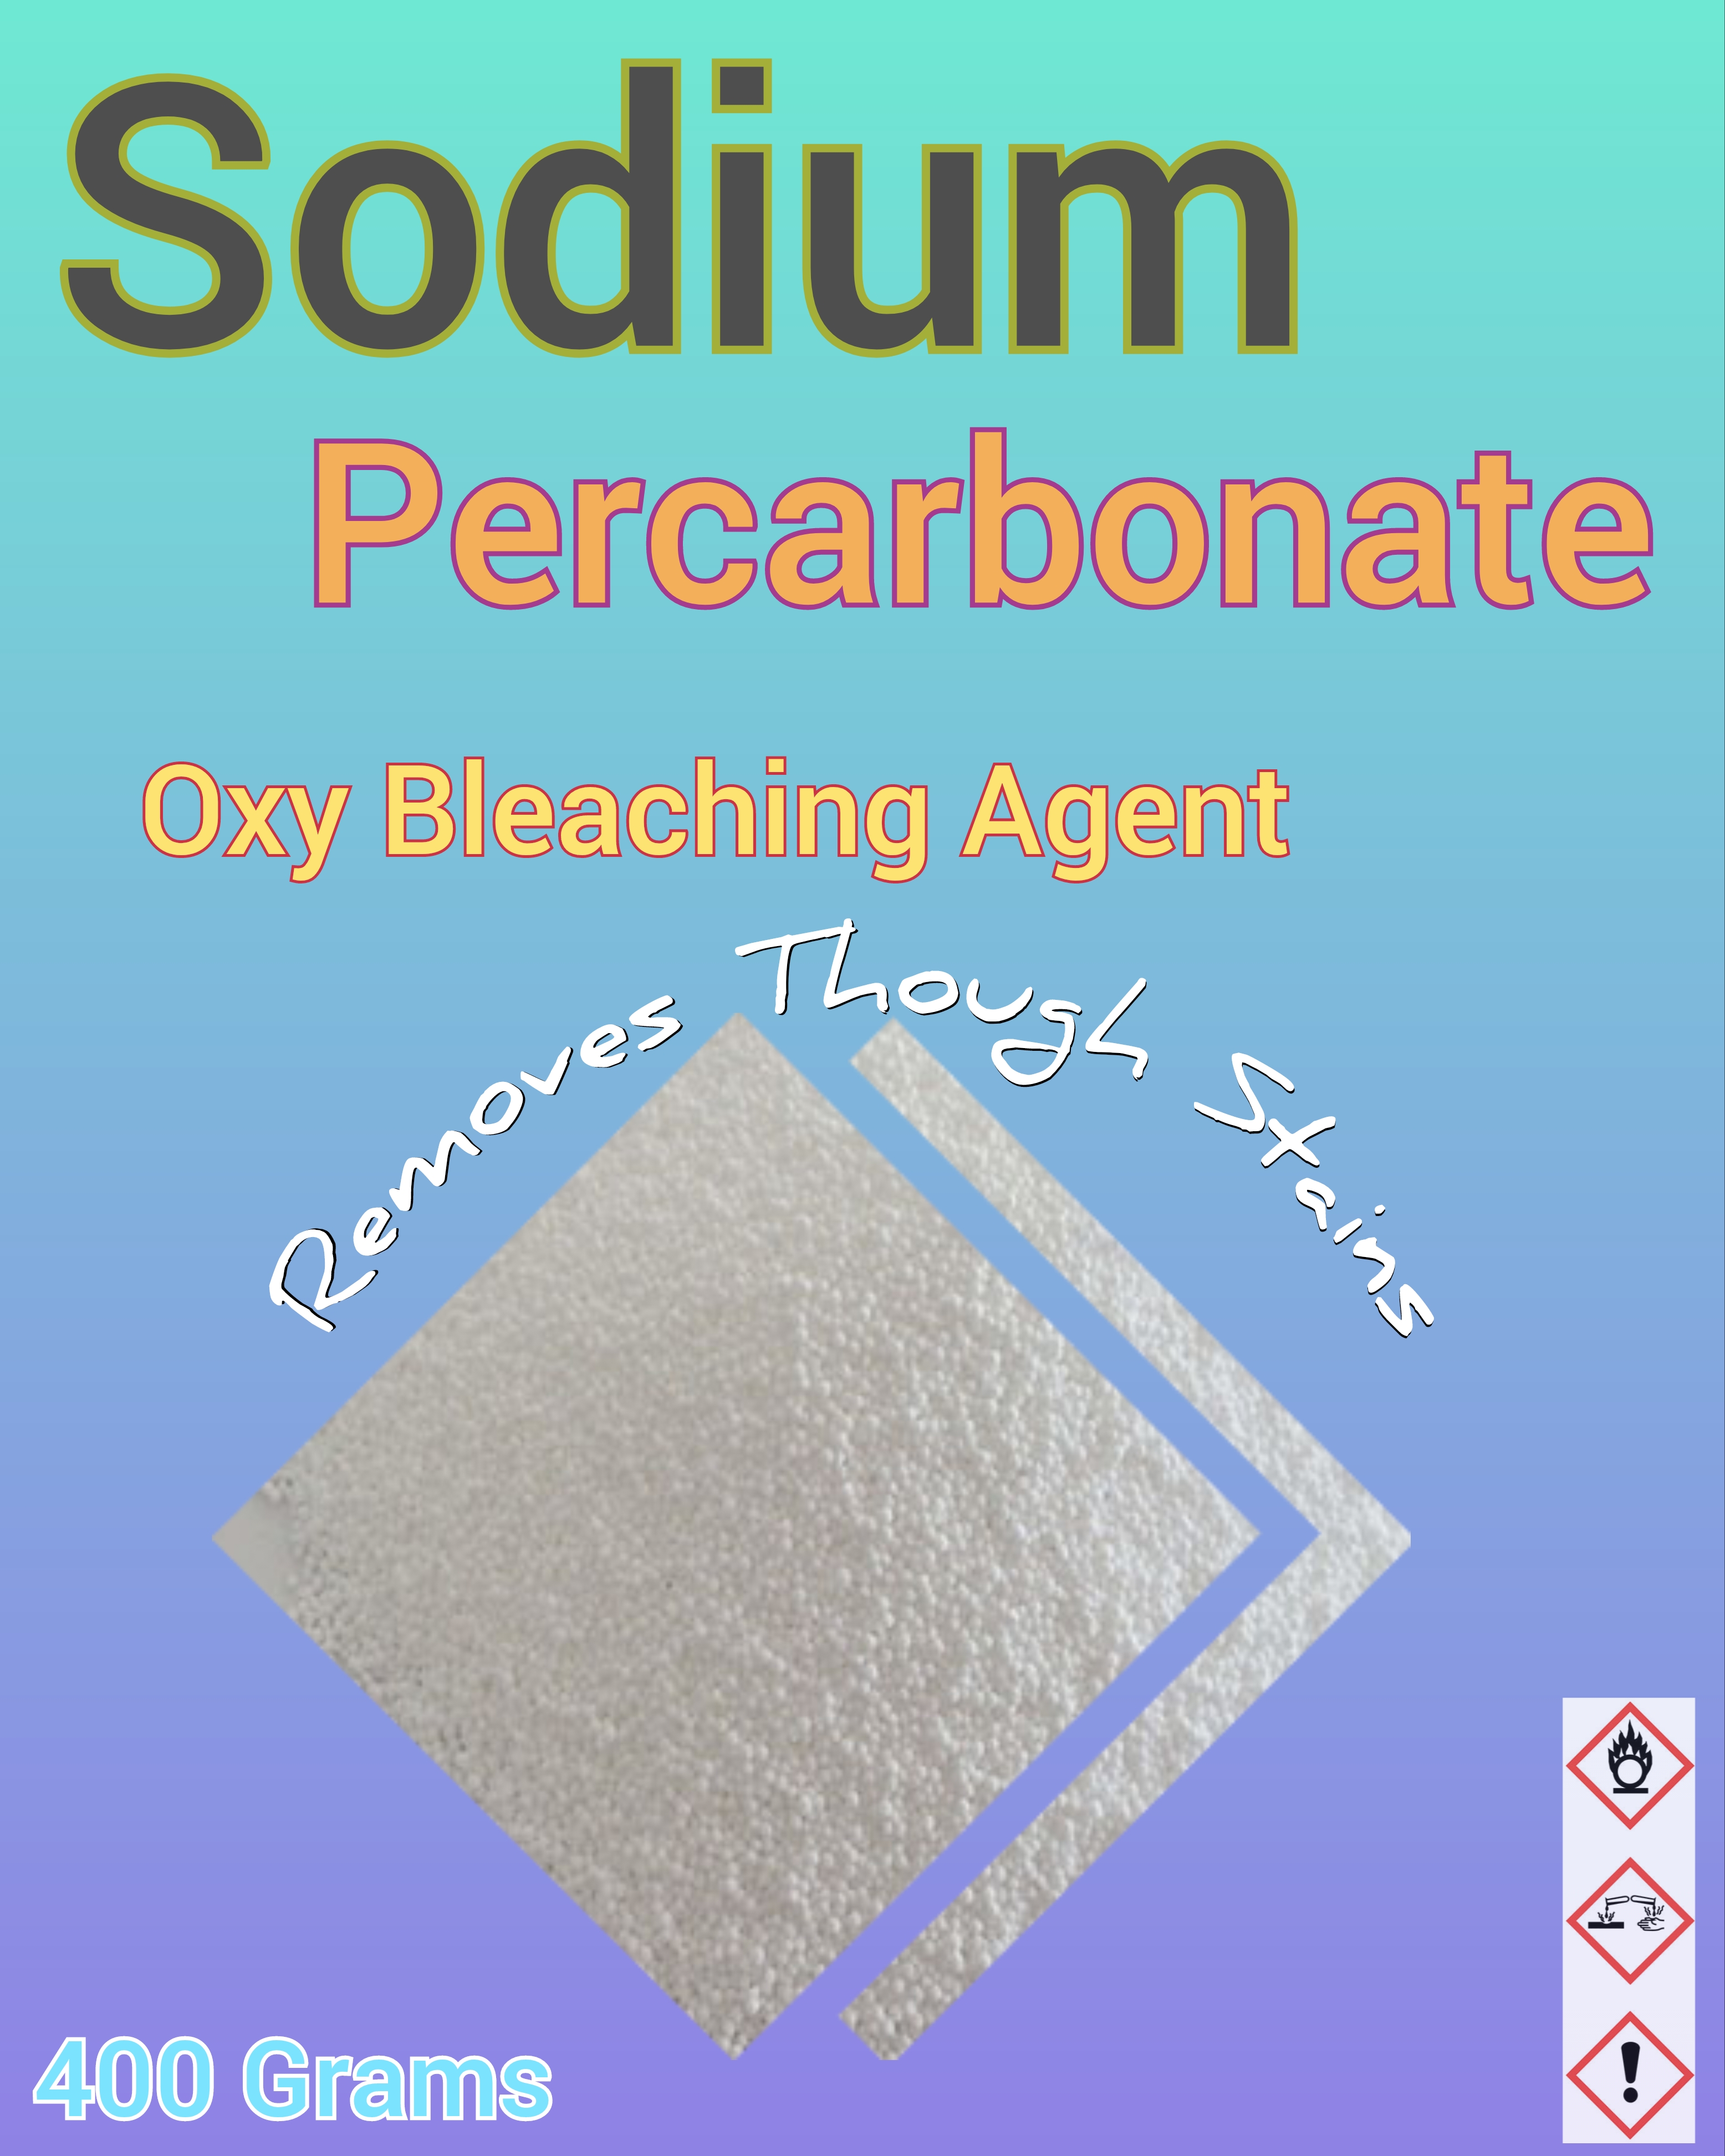 Percarbonate de sodium 400 g